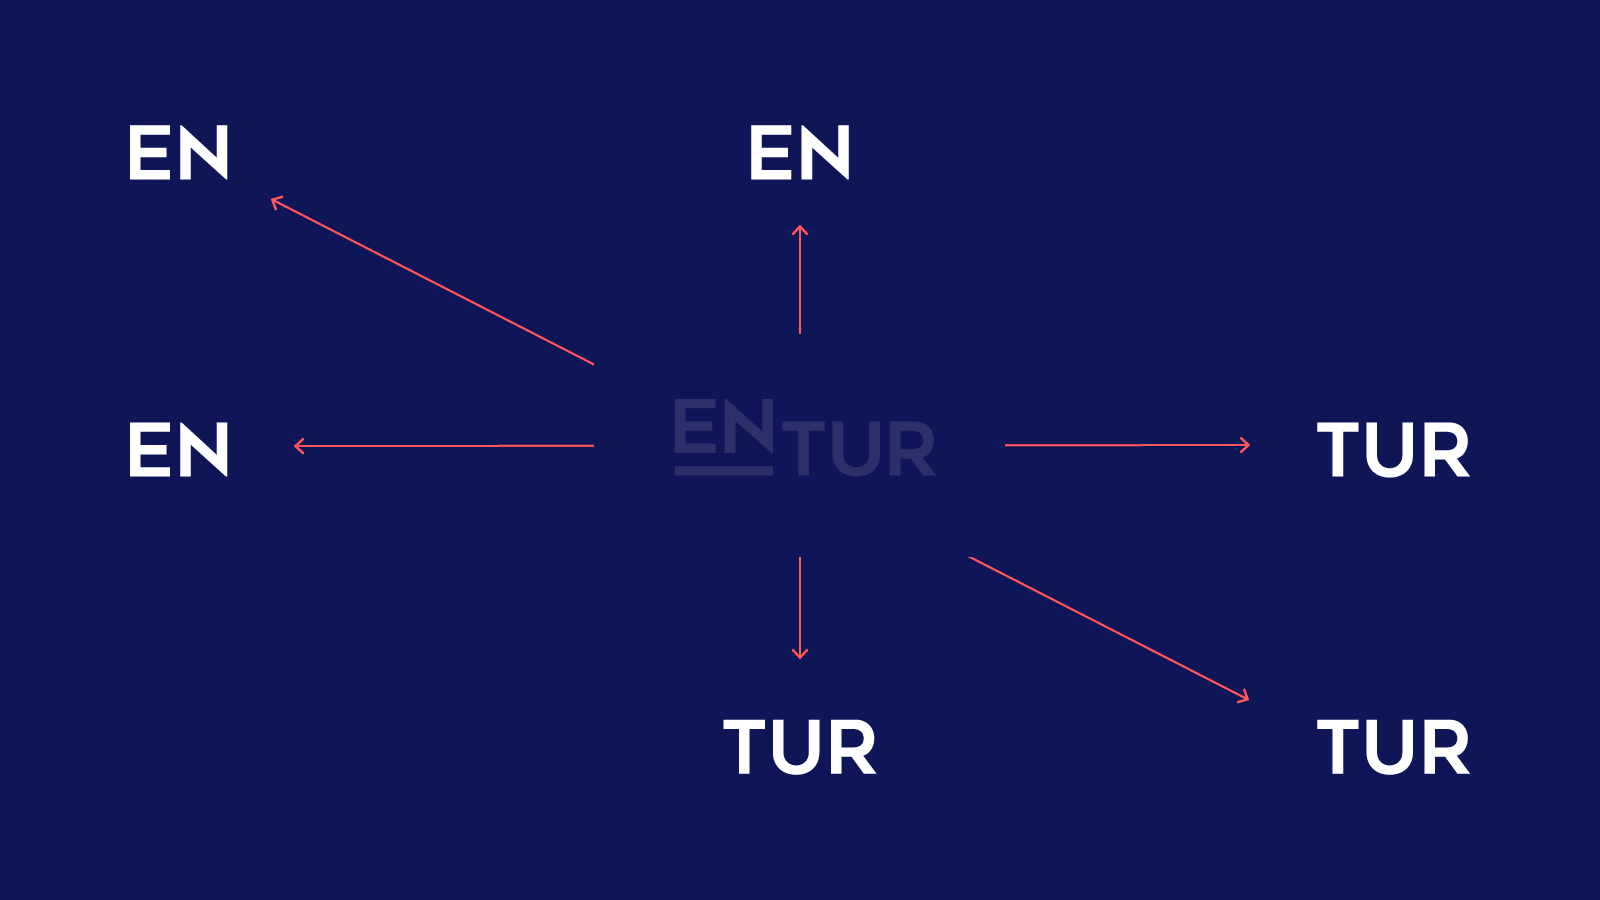 Viser hvordan ENTUR kan skrives på tvers av tre akser: horisontal, vertikalt eller diagonalt